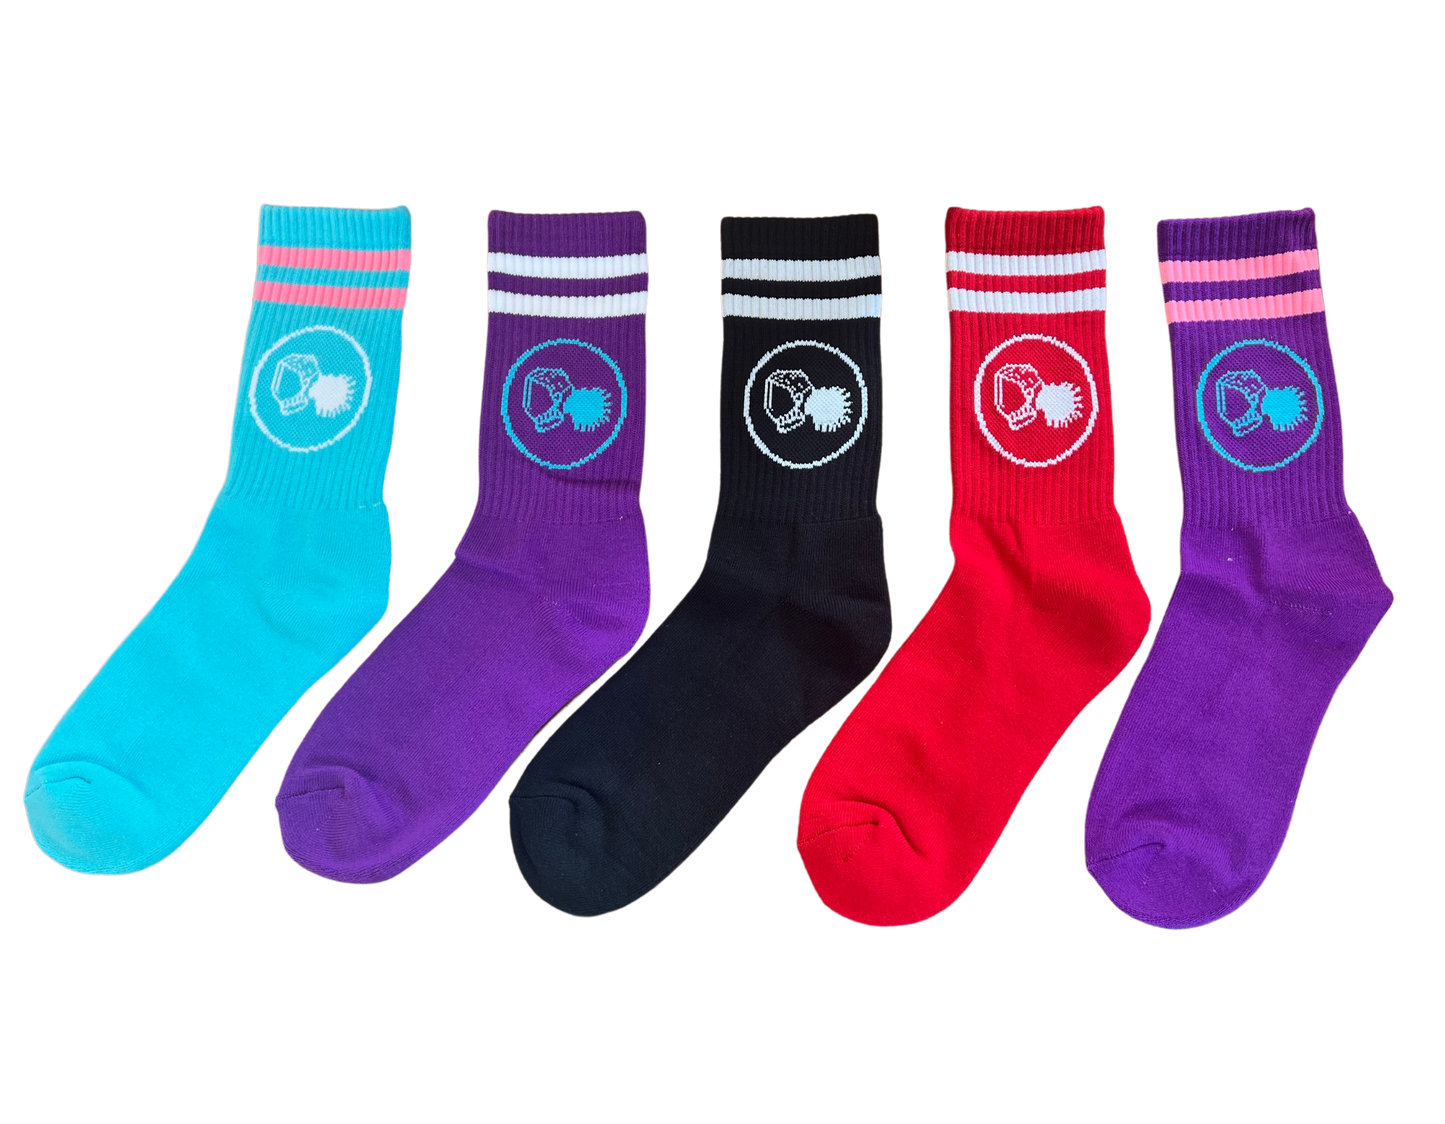 GISC logo socks